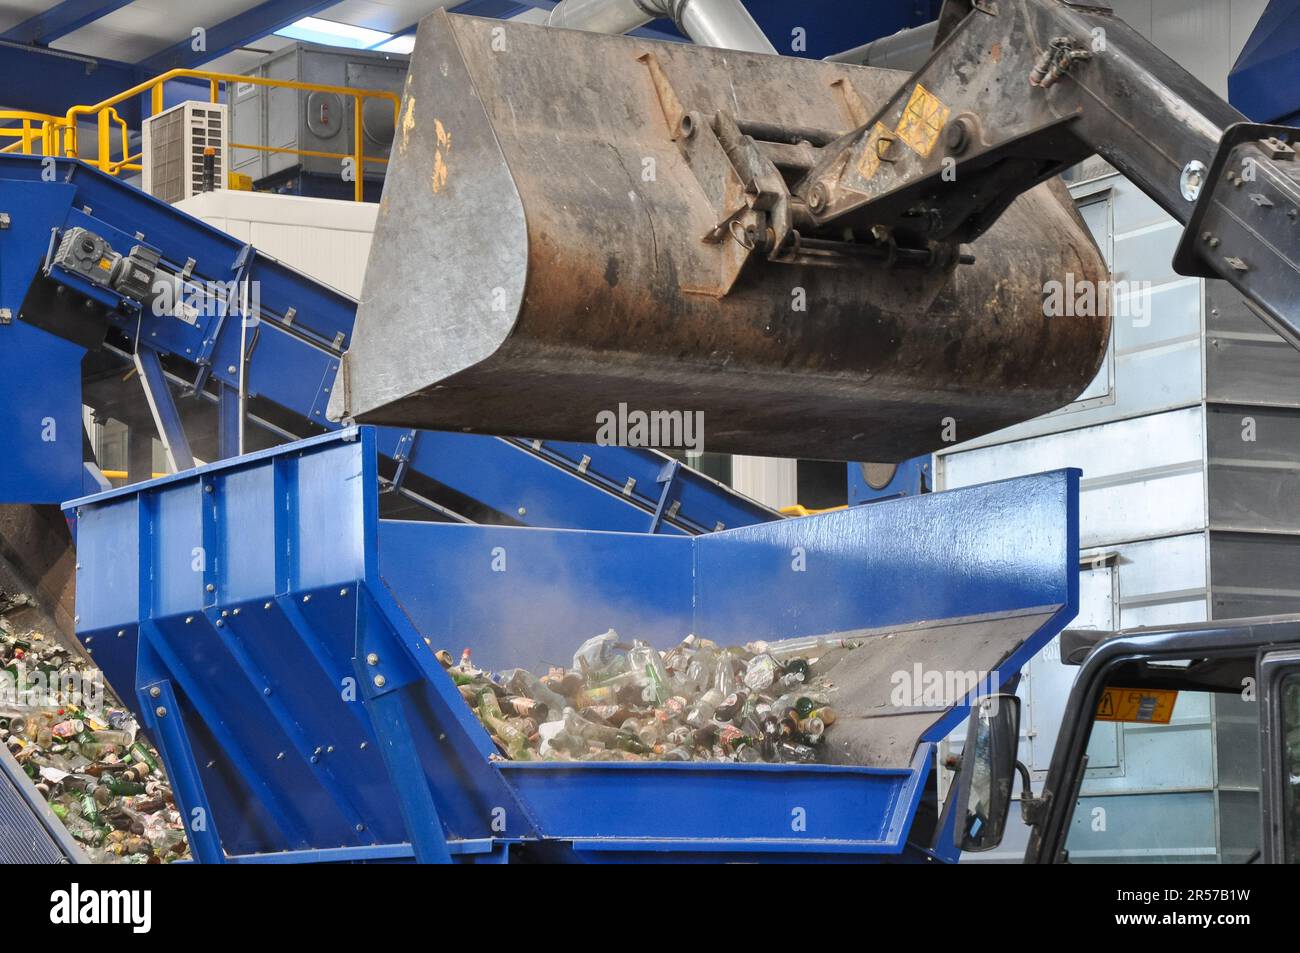 L'escavatore che carica i rifiuti in un impianto di riciclaggio dei rifiuti sta smistando i rifiuti, problemi ambientali. impianto di smistamento rifiuti, centro di smistamento rifiuti Foto Stock